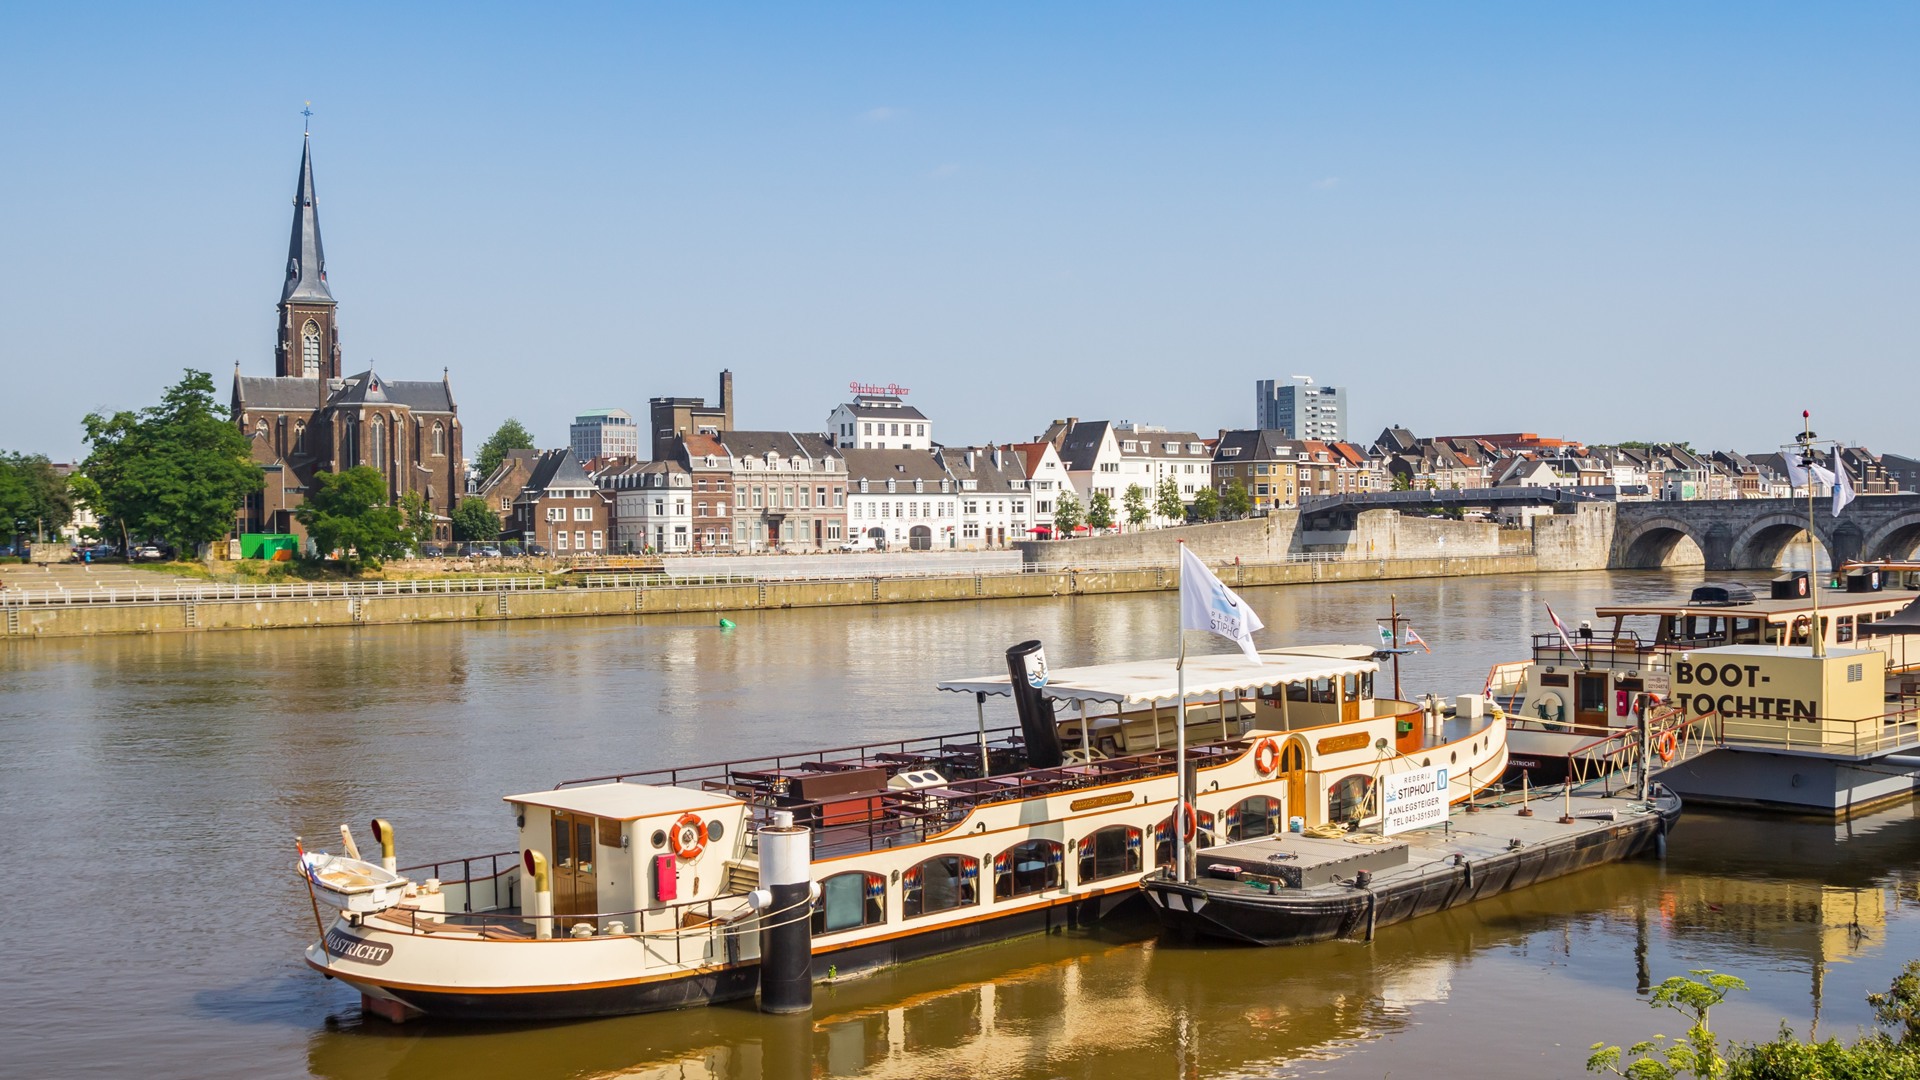 Maak tijdens je verblijf in Maastricht een boottocht over de Maas en geniet van de bourgondische levensstijl